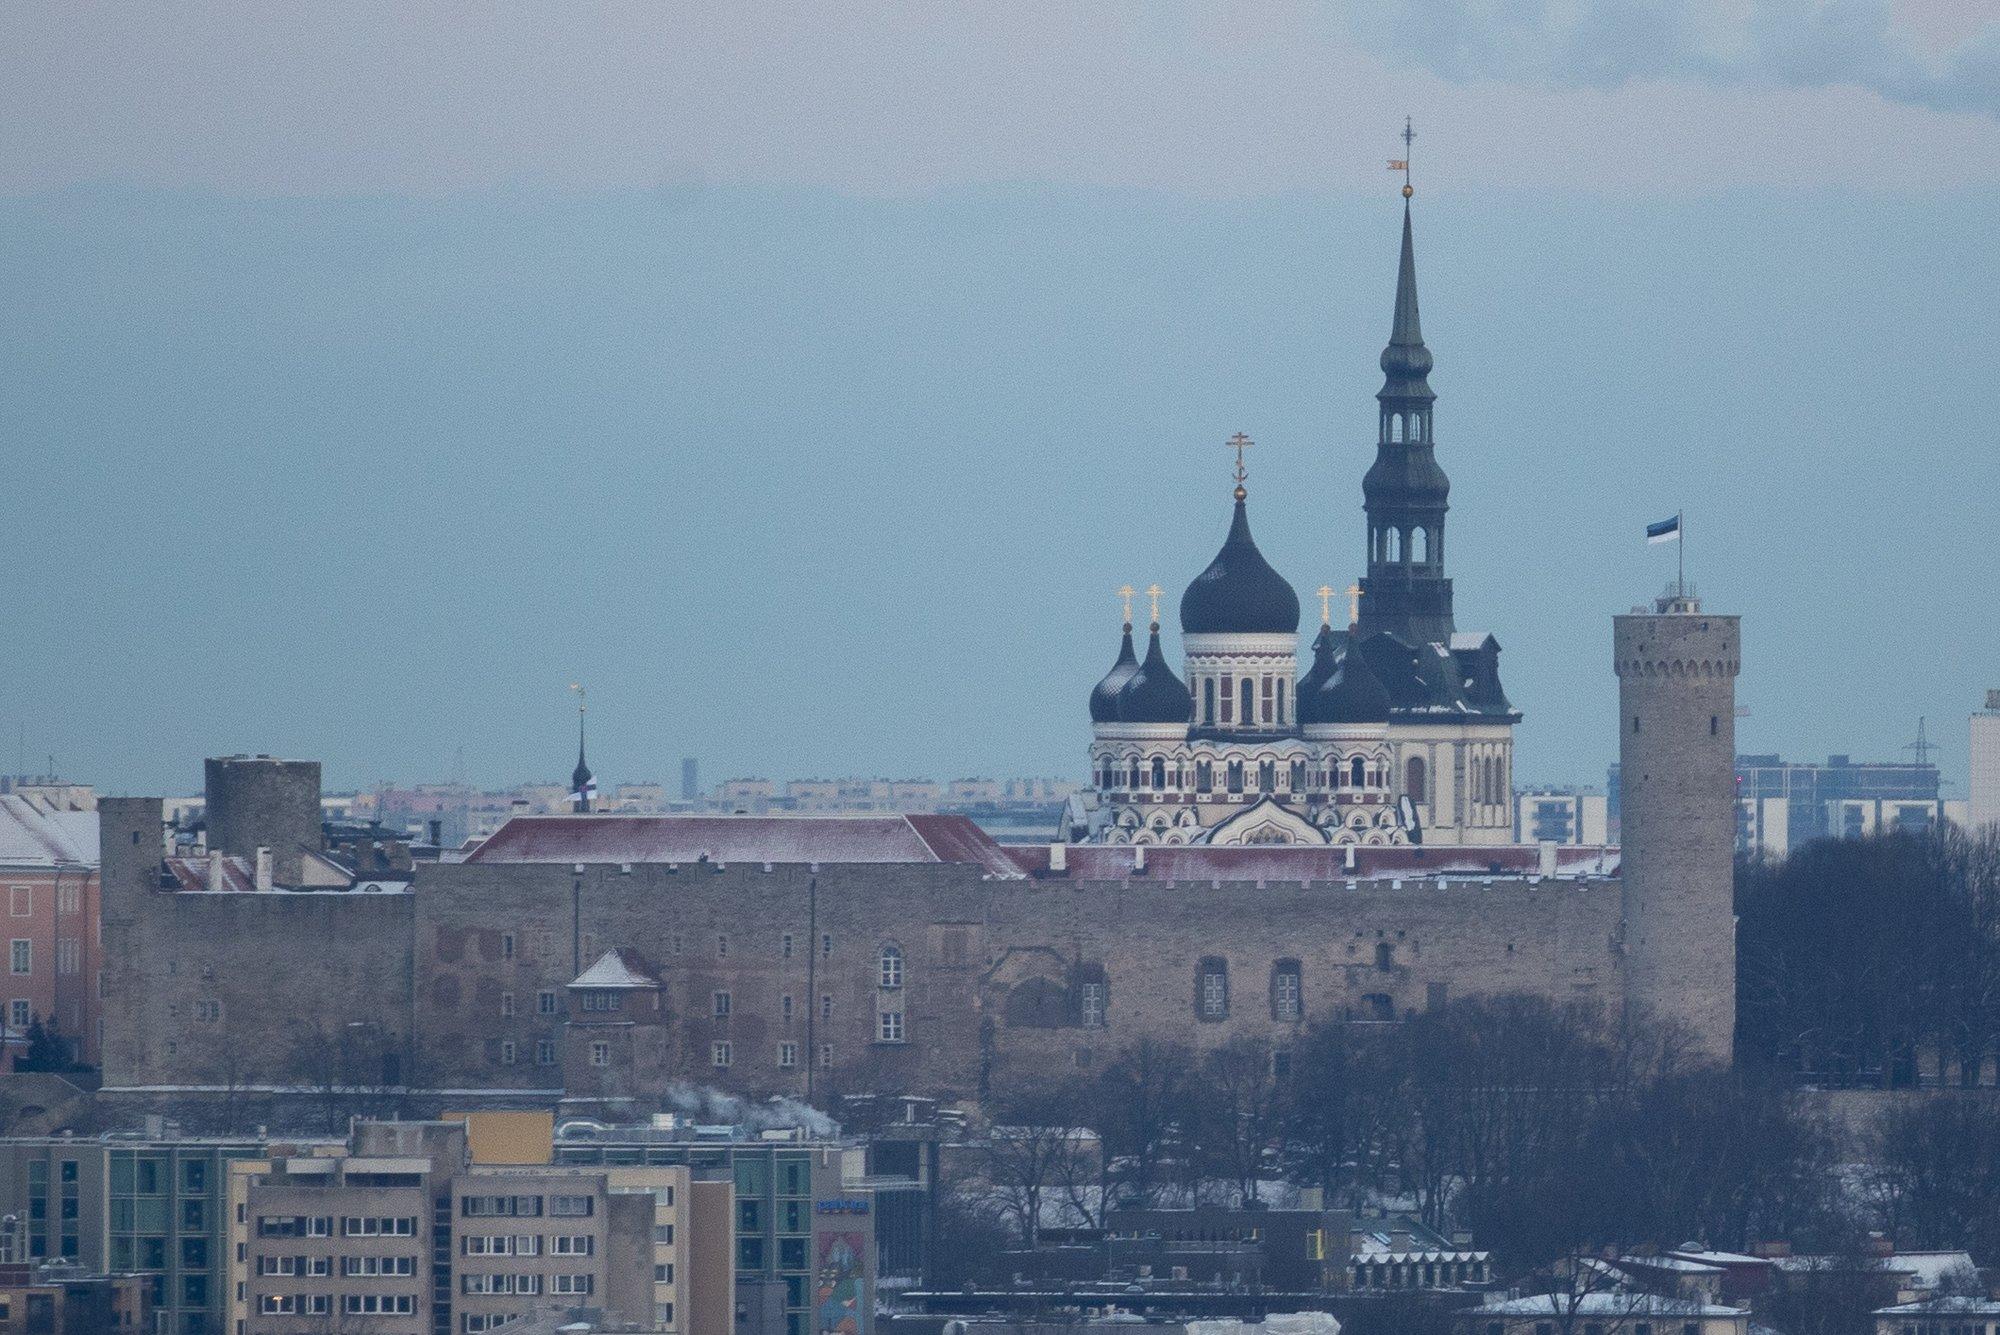 Договор аренды офисных помещений Эстонской православной церкви Московского патриархаты был расторгнут во второй раз